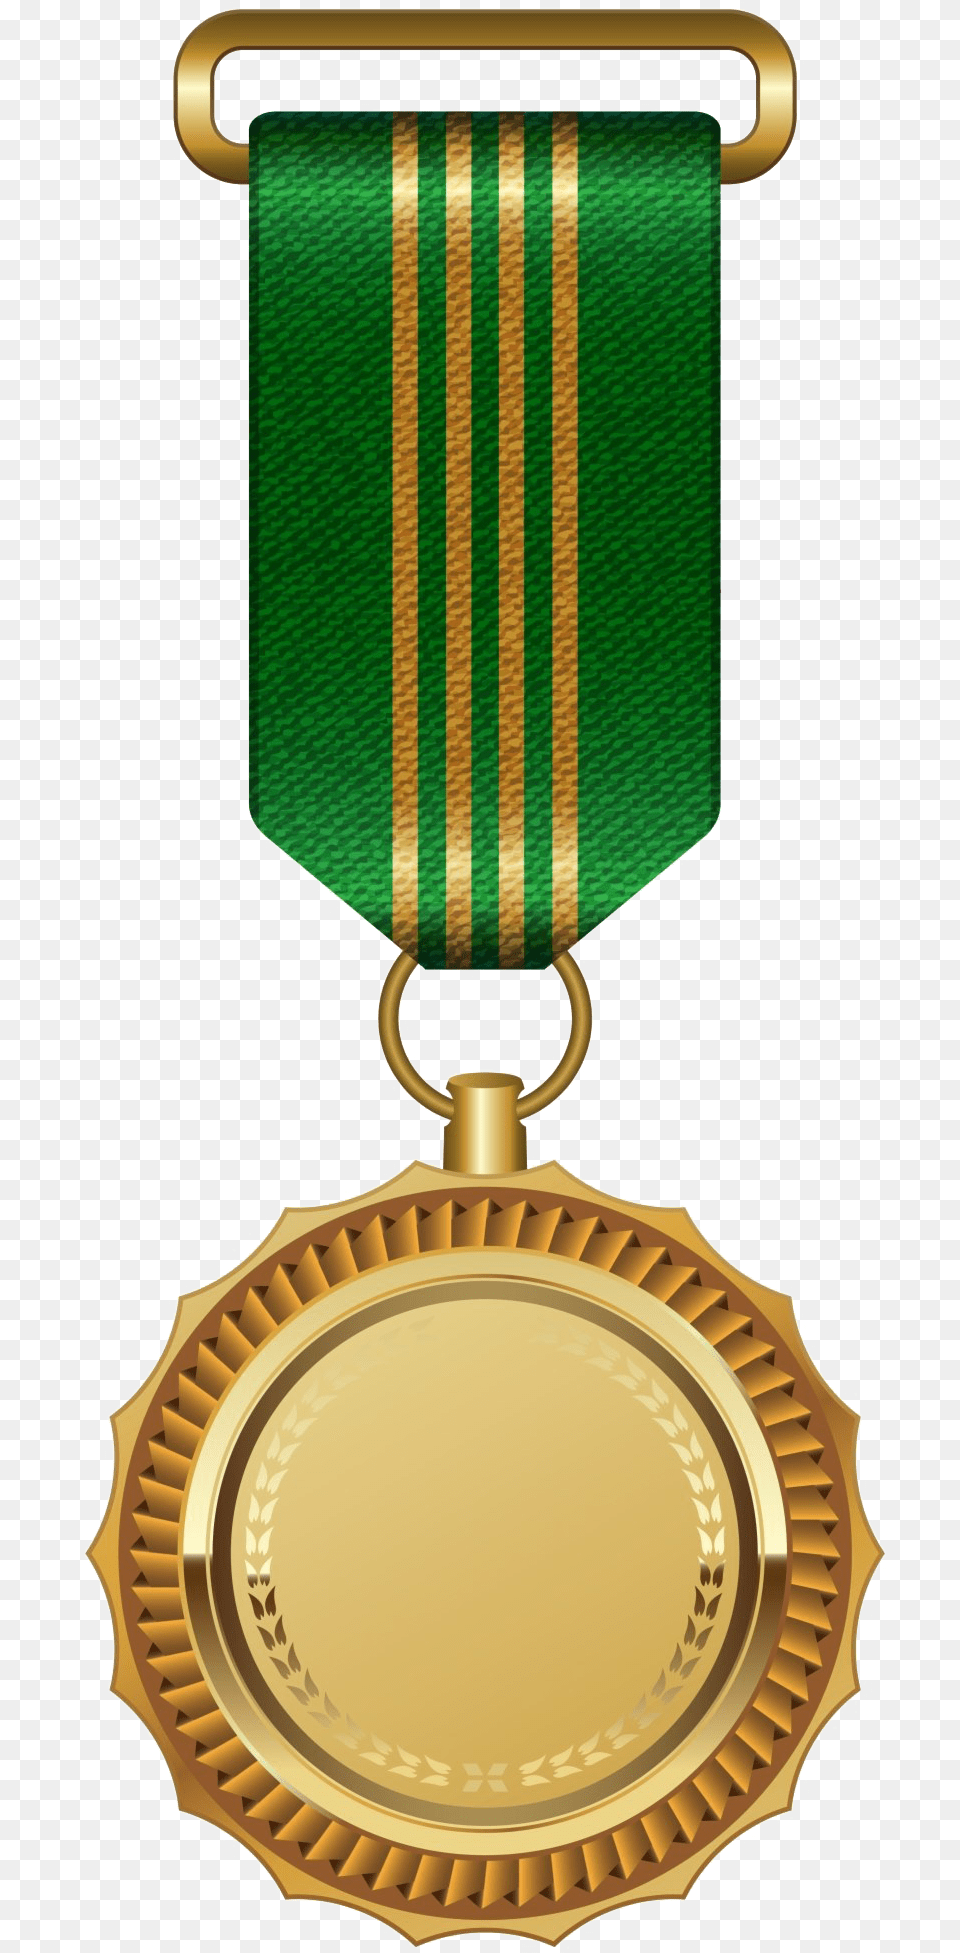 Gold Seal Transparent, Gold Medal, Trophy, Blade, Razor Png Image